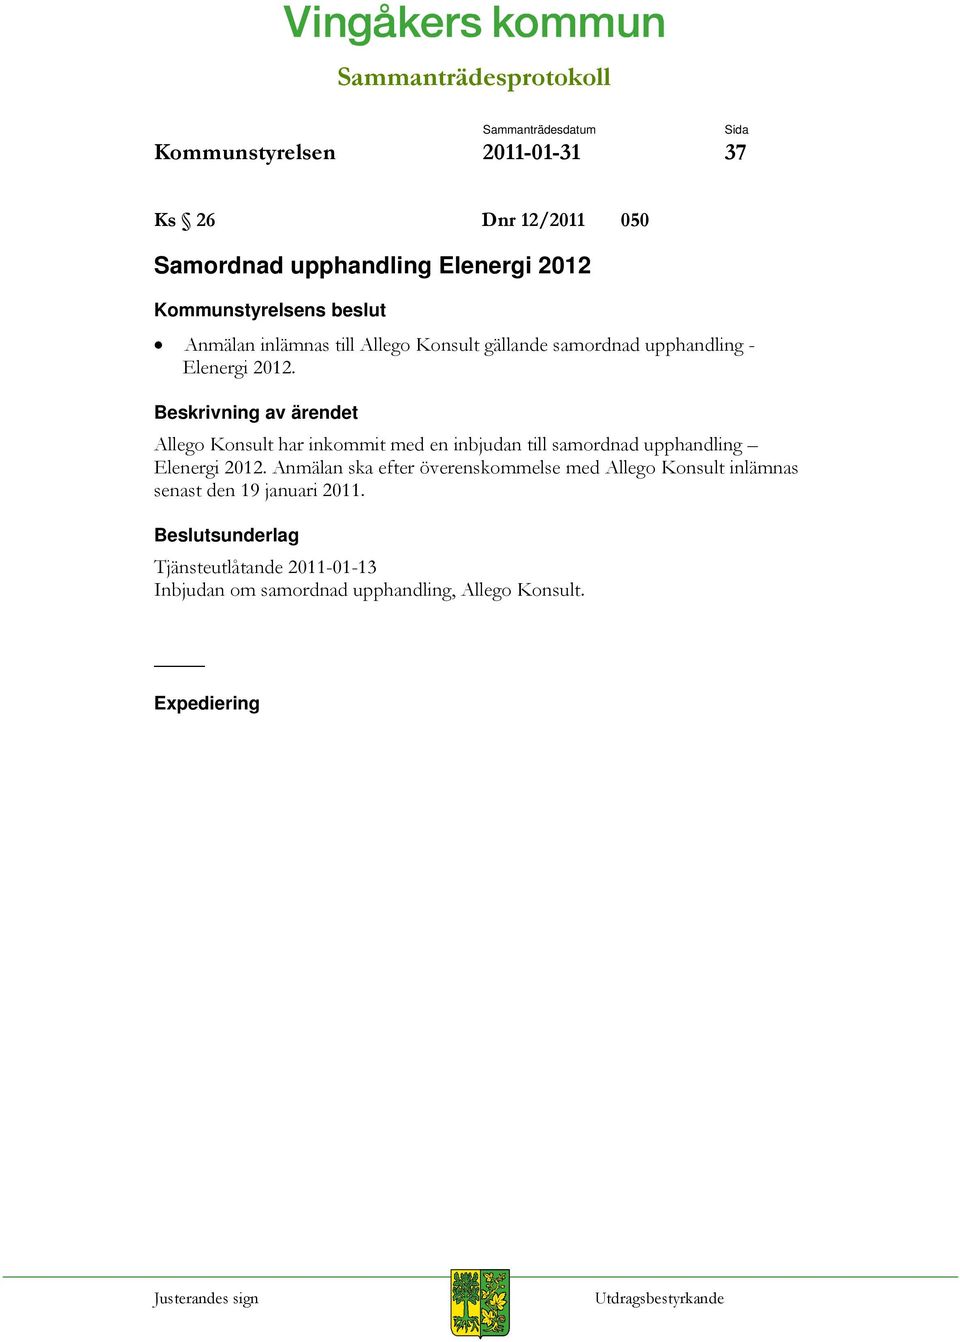 Allego Konsult har inkommit med en inbjudan till samordnad upphandling Elenergi 2012.